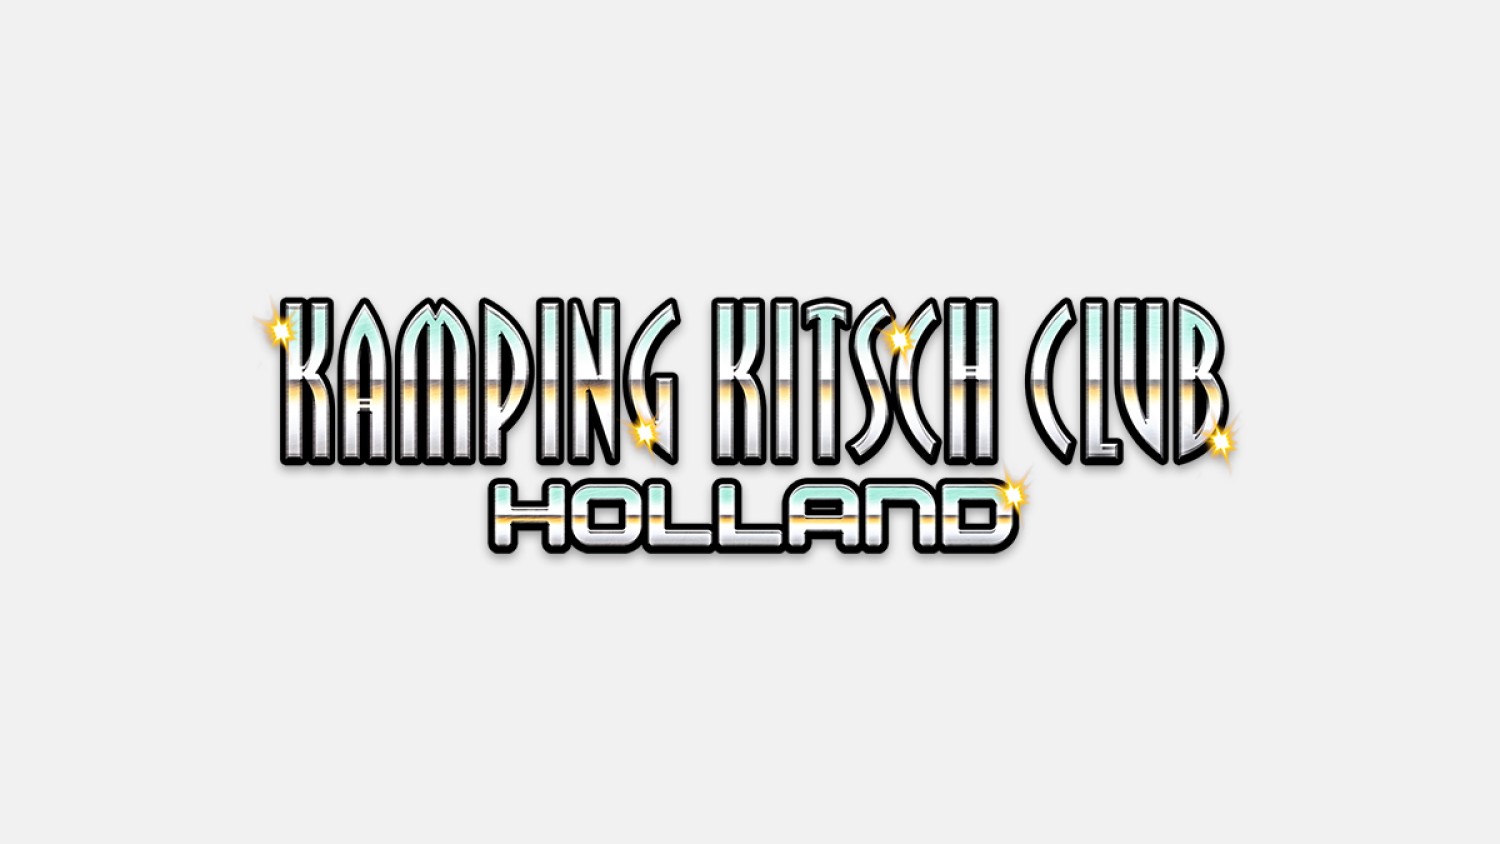 Kamping Kitsch Club Holland